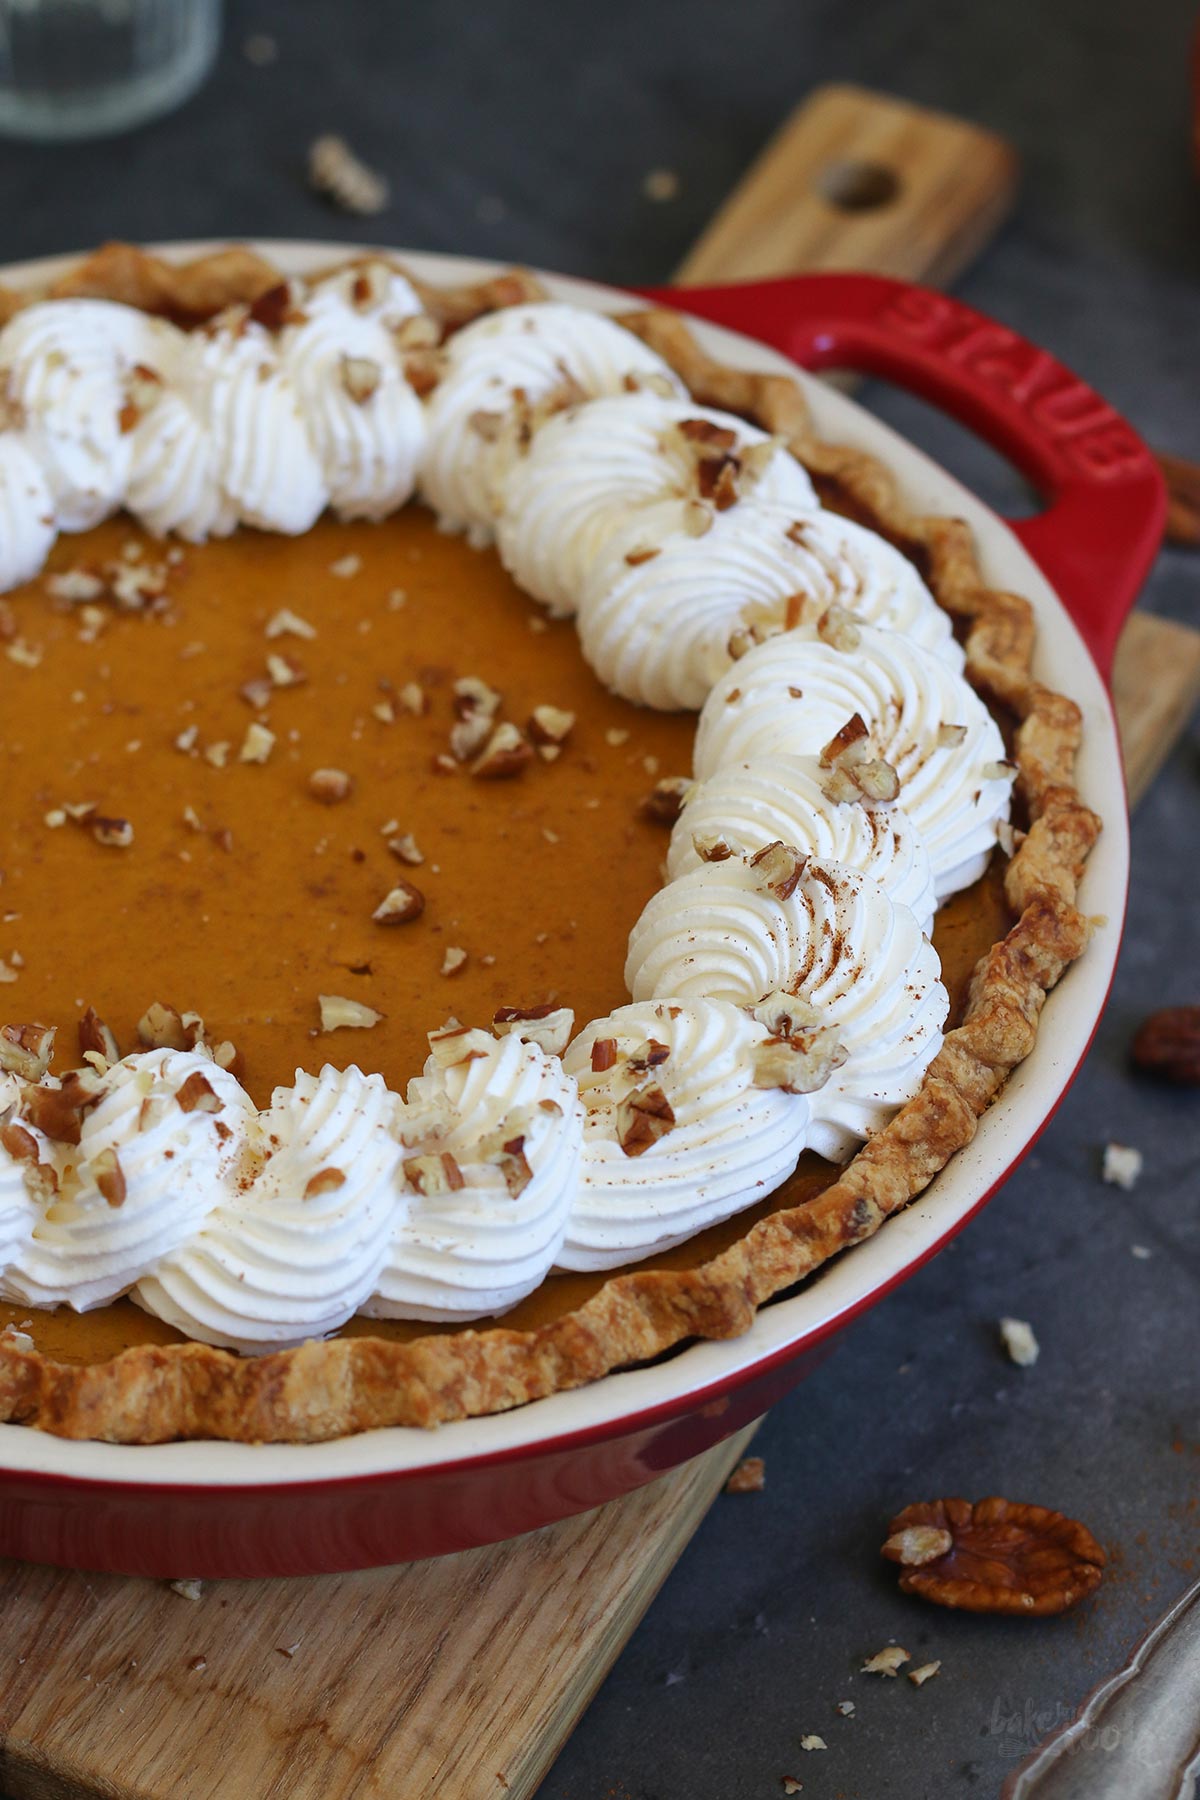 Klassischer Pumpkin Pie | Bake to the roots